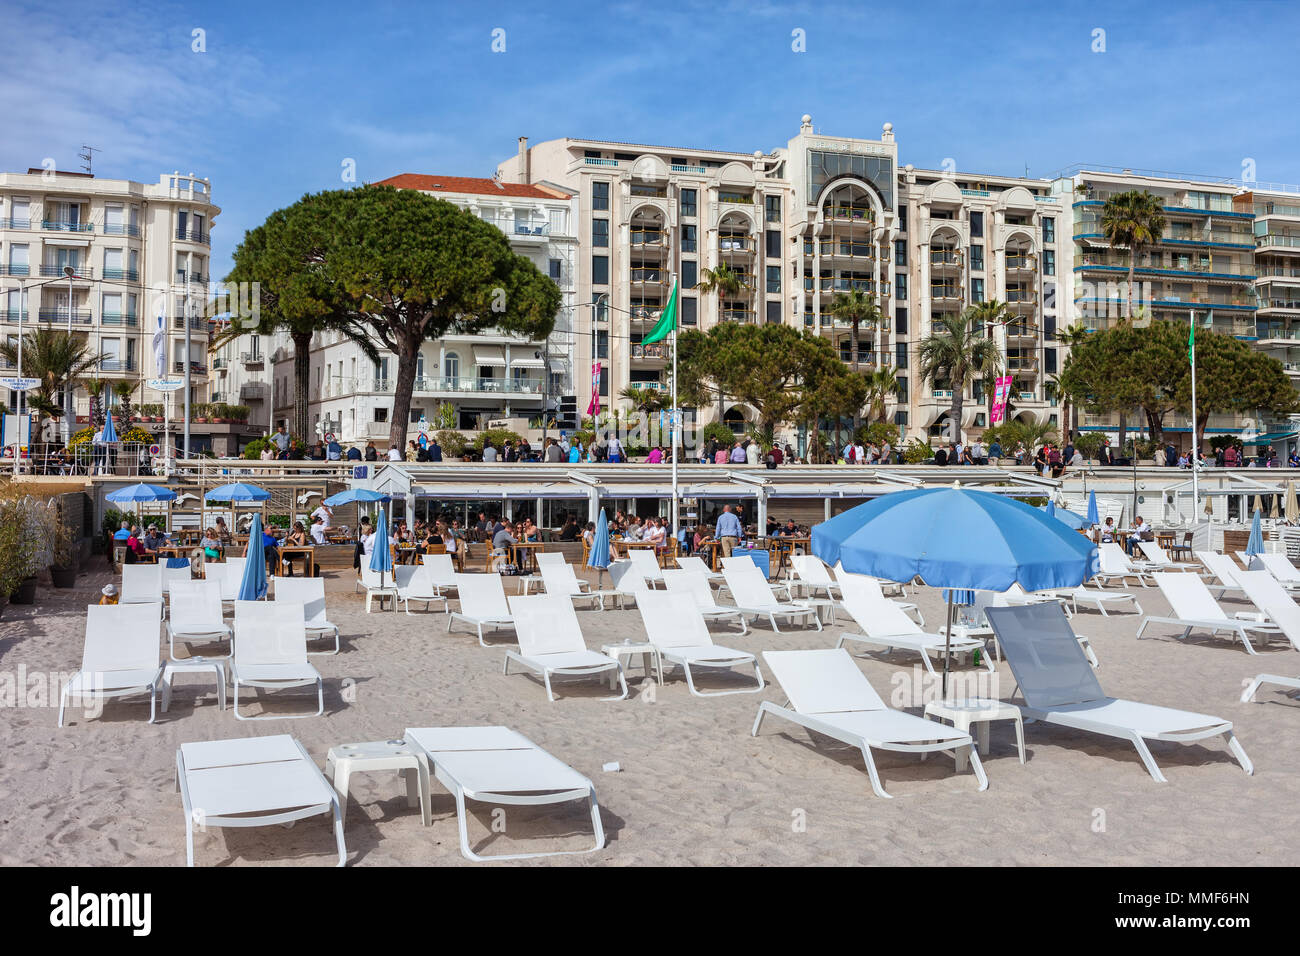 Francia, città di Cannes, spiaggia con lettini per prendere il sole sulla Riviera Francese, edifici lungo il Boulevard de la Croisette Foto Stock